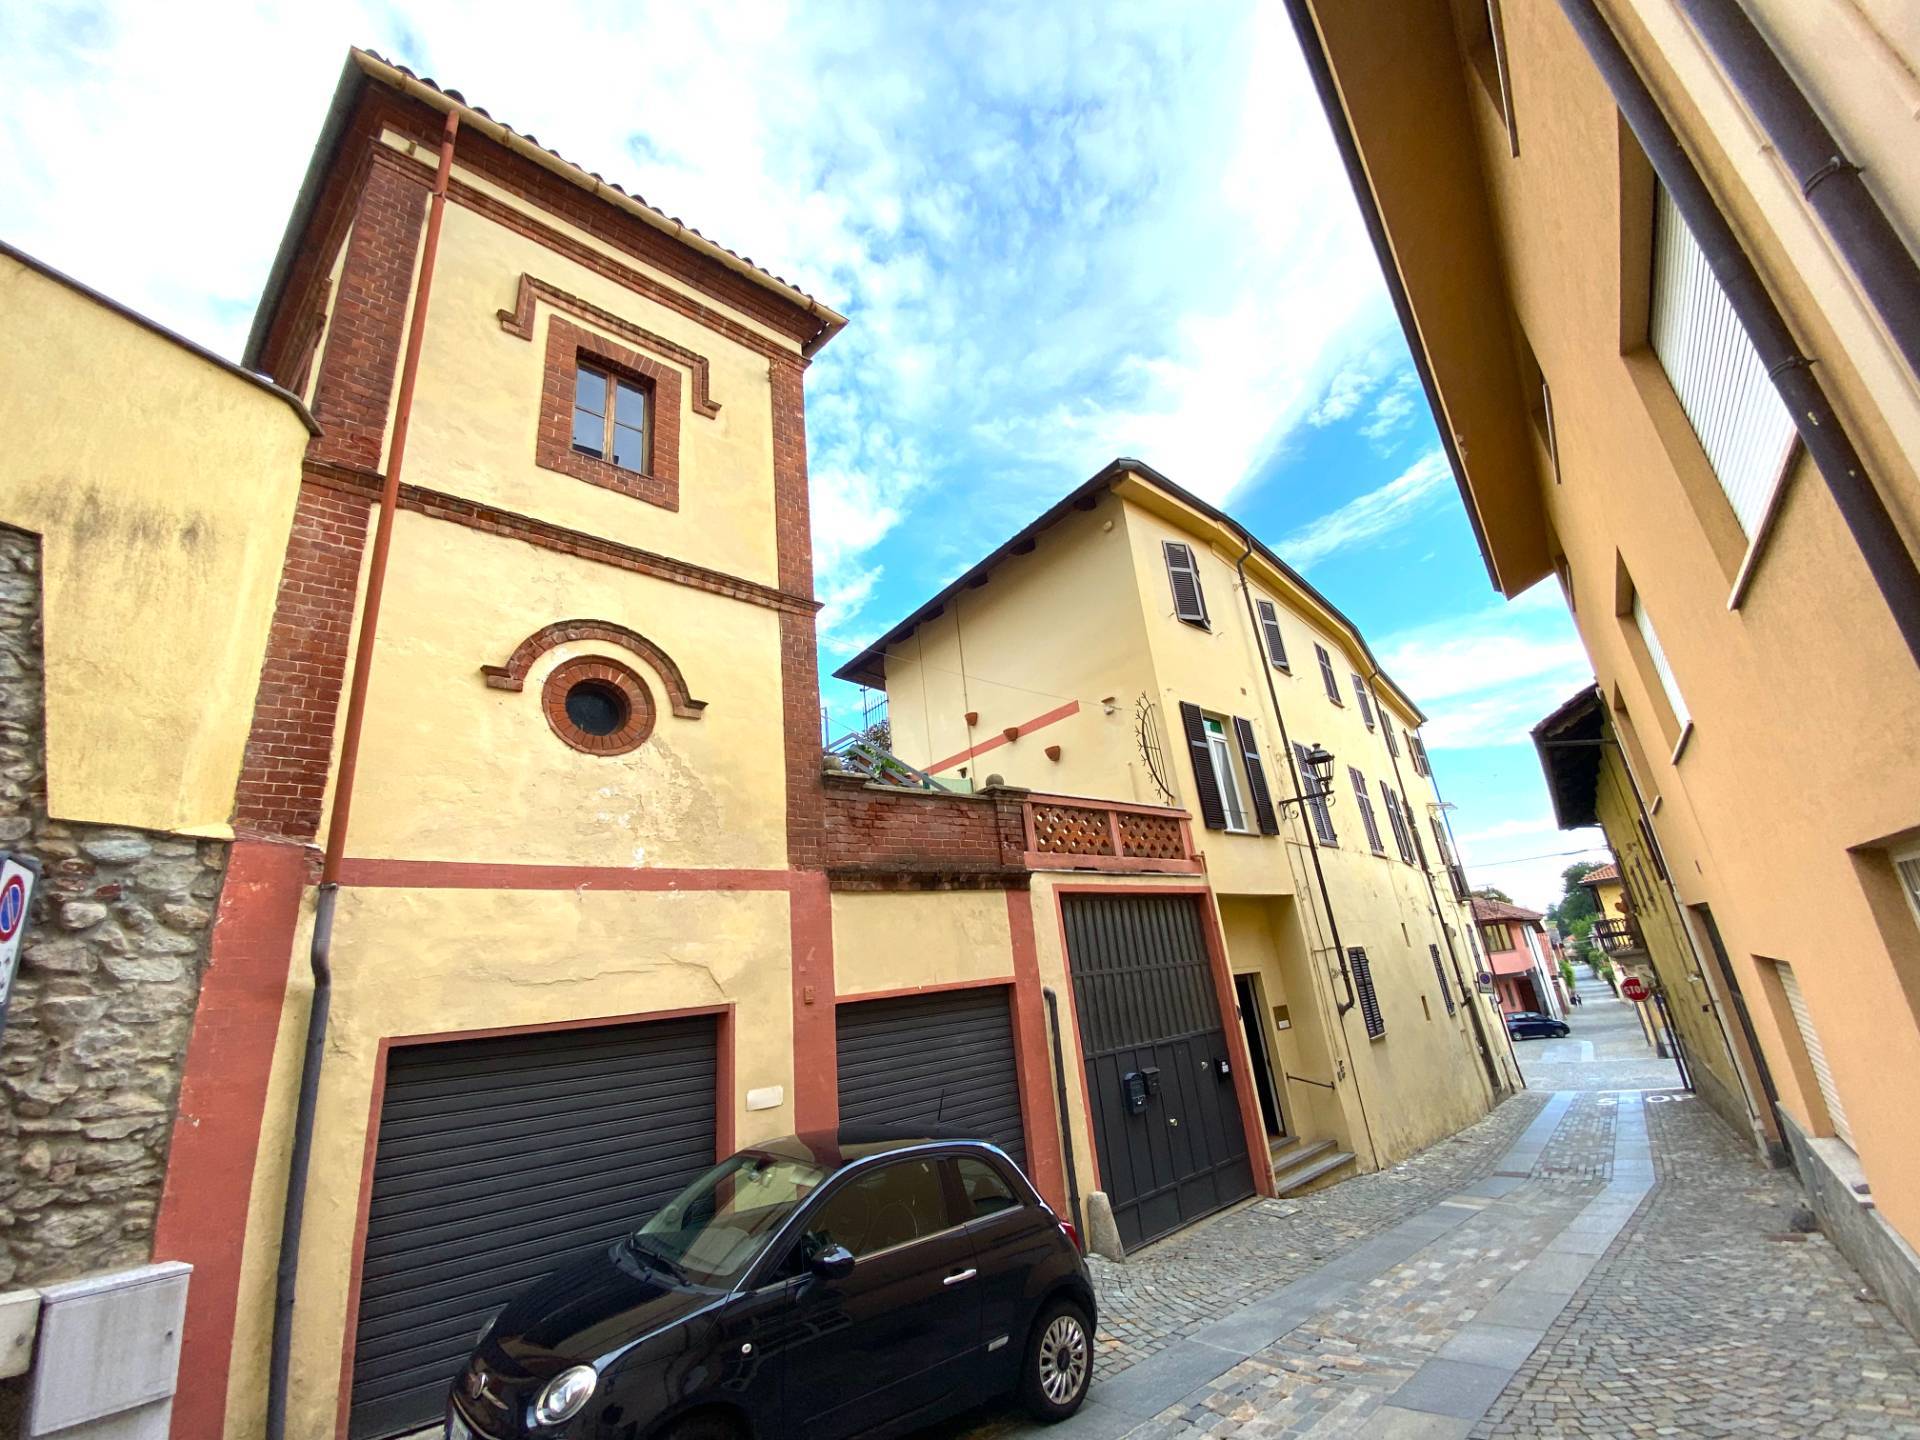 Appartamento in vendita a Villarbasse, 3 locali, prezzo € 55.000 | PortaleAgenzieImmobiliari.it